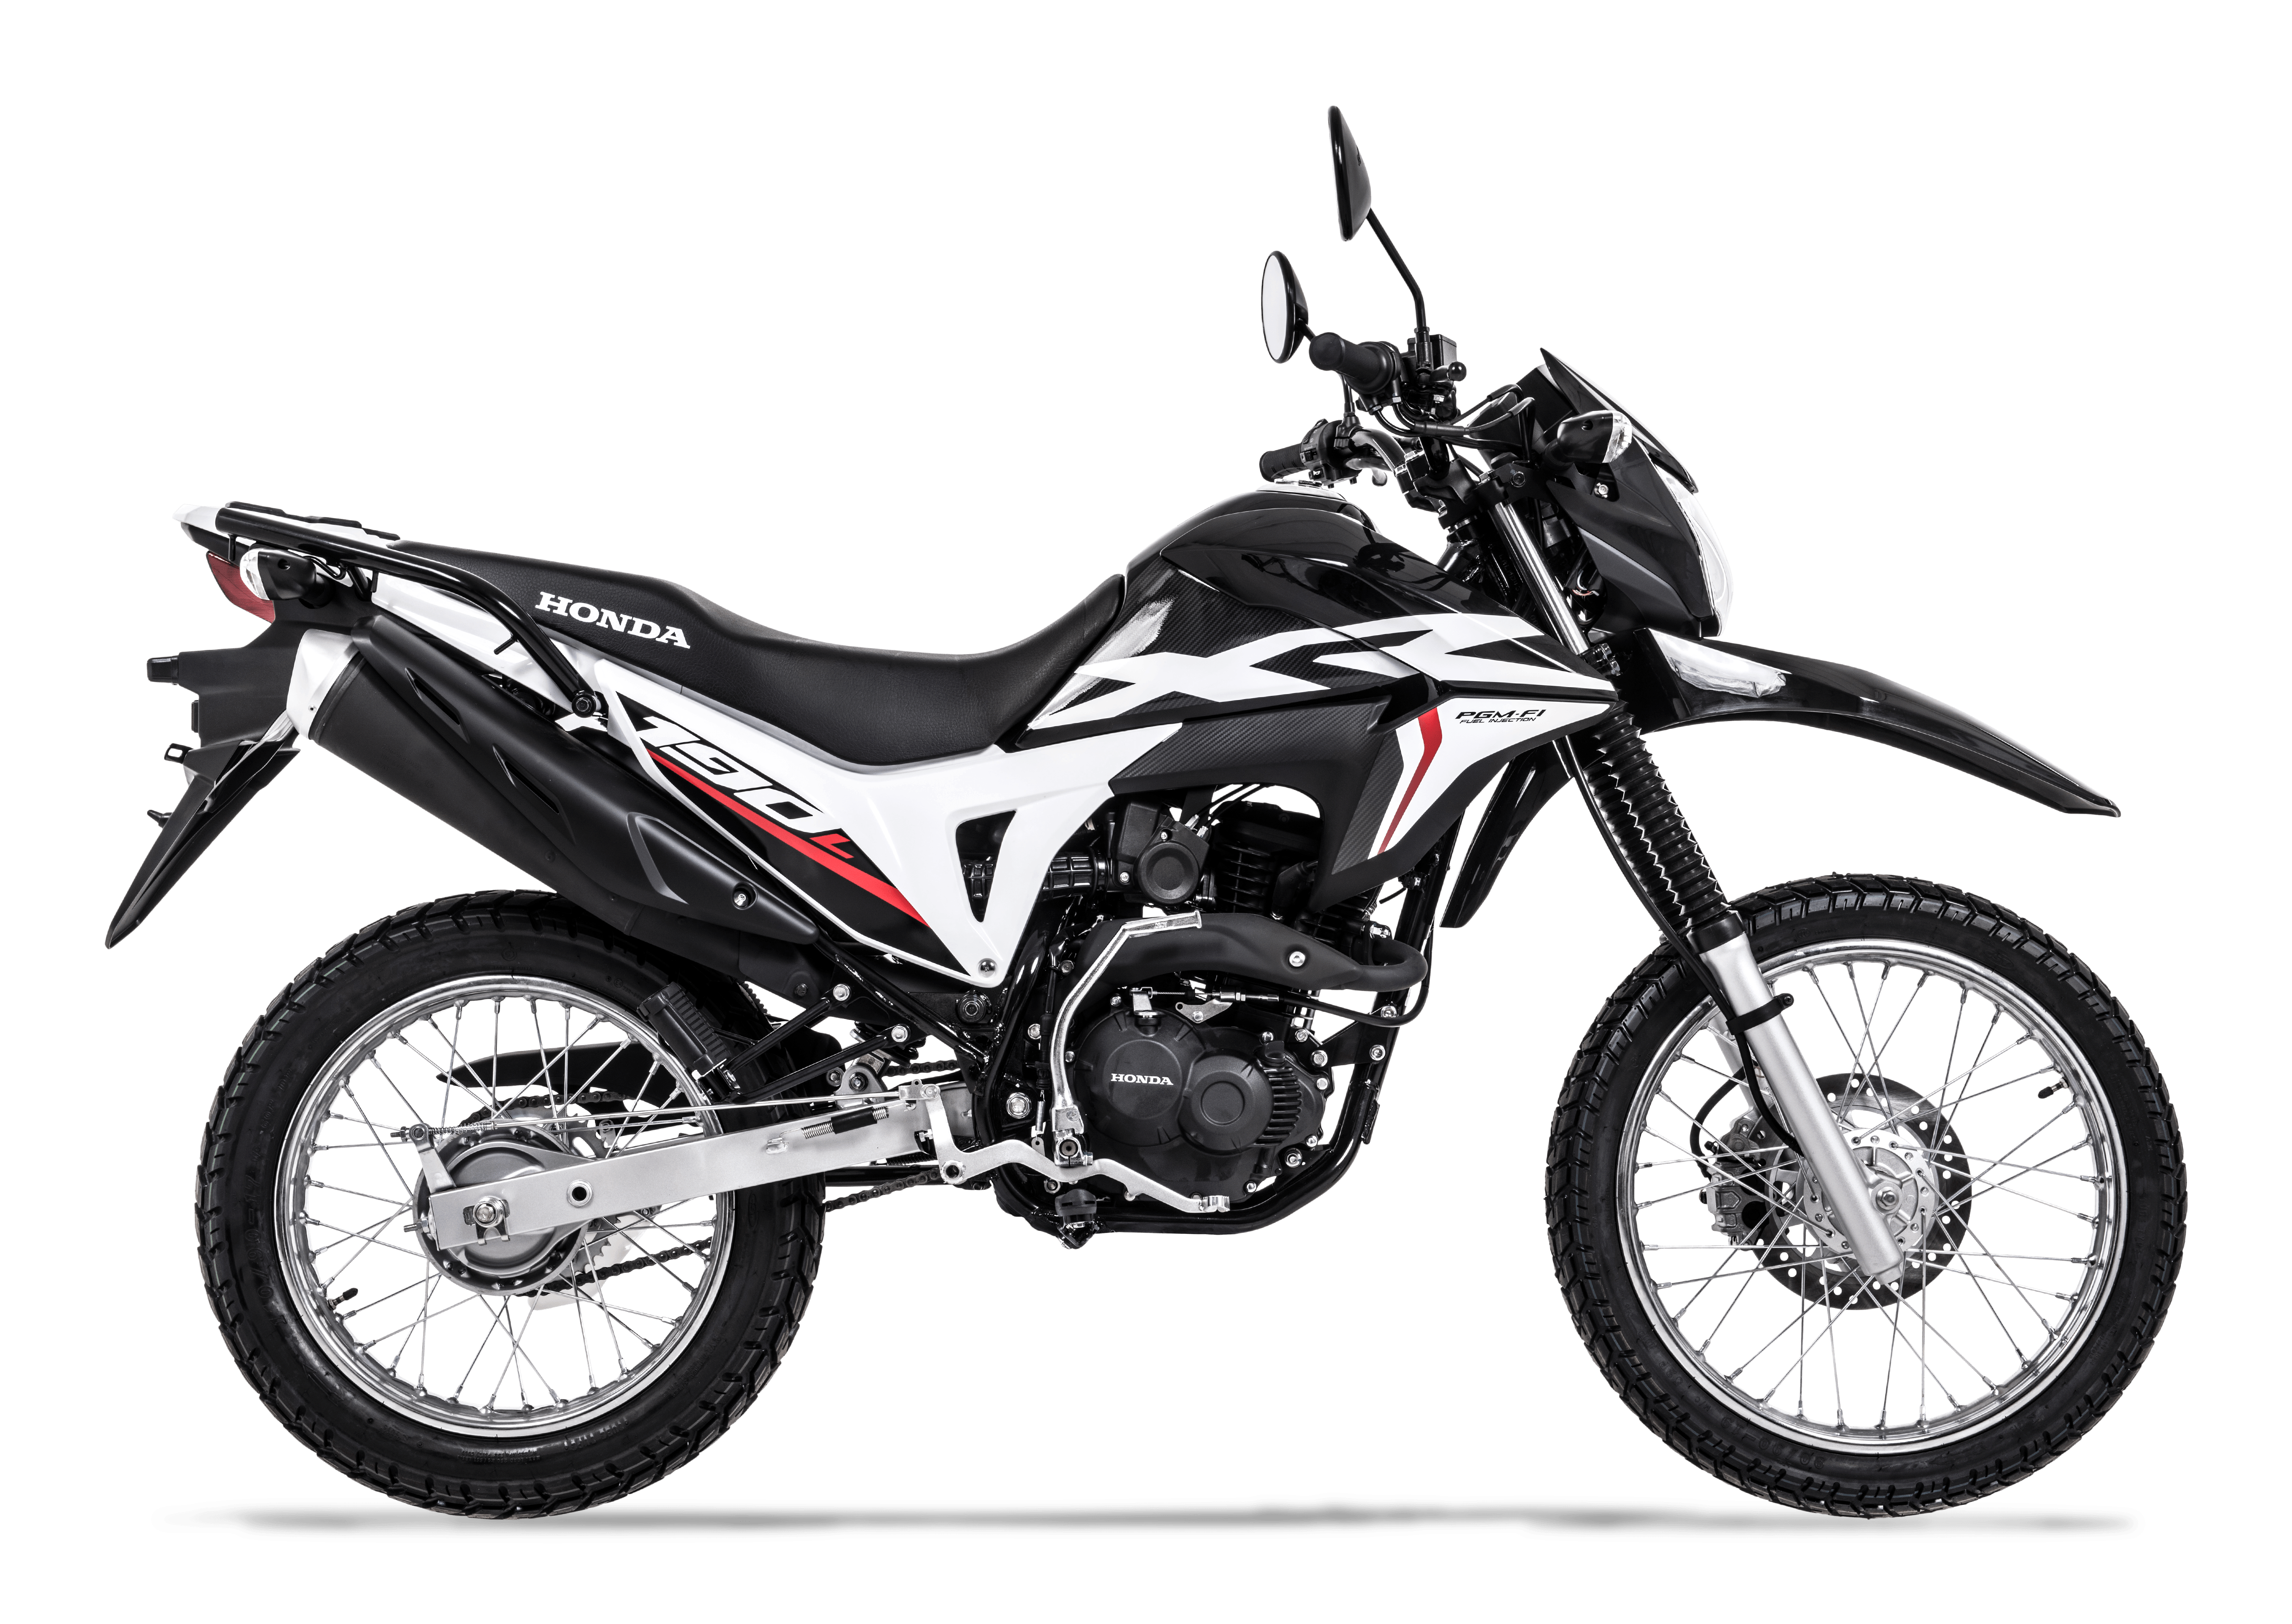 Xr190l 2020 Motos Honda Precio 3039 Somos Moto Perú 6346